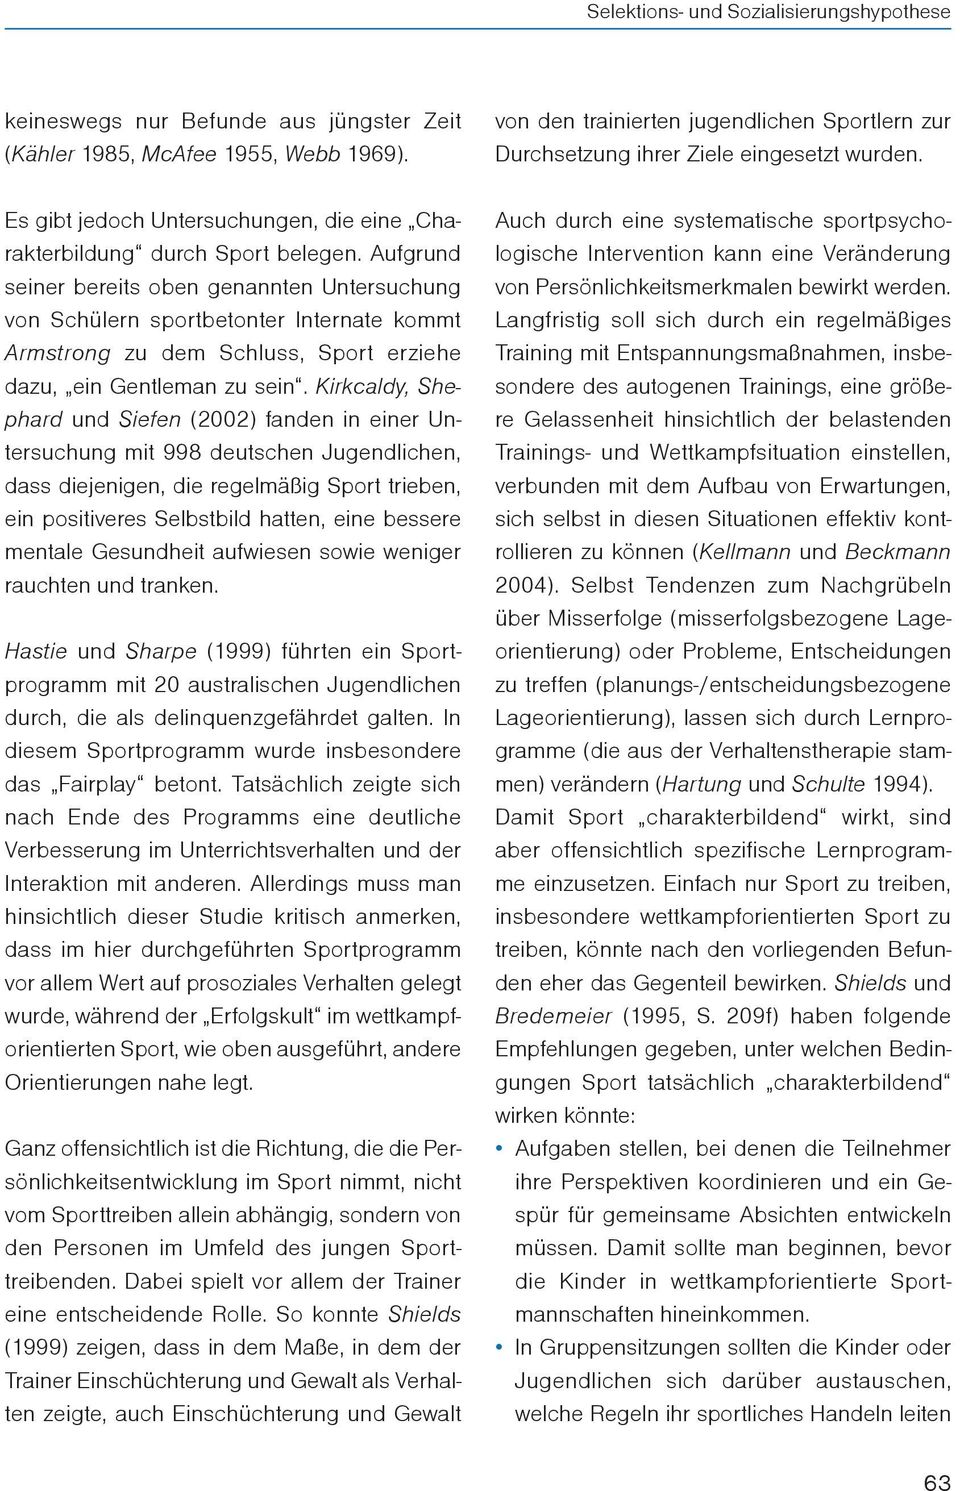 Kirkcaldy, Shephard und Siefen (2002) fanden in einer Untersuchung mit 998 deutschen Jugendlichen, dass diejenigen, die regelmäßig Sport trieben, ein positiveres Selbstbild hatten, eine bessere